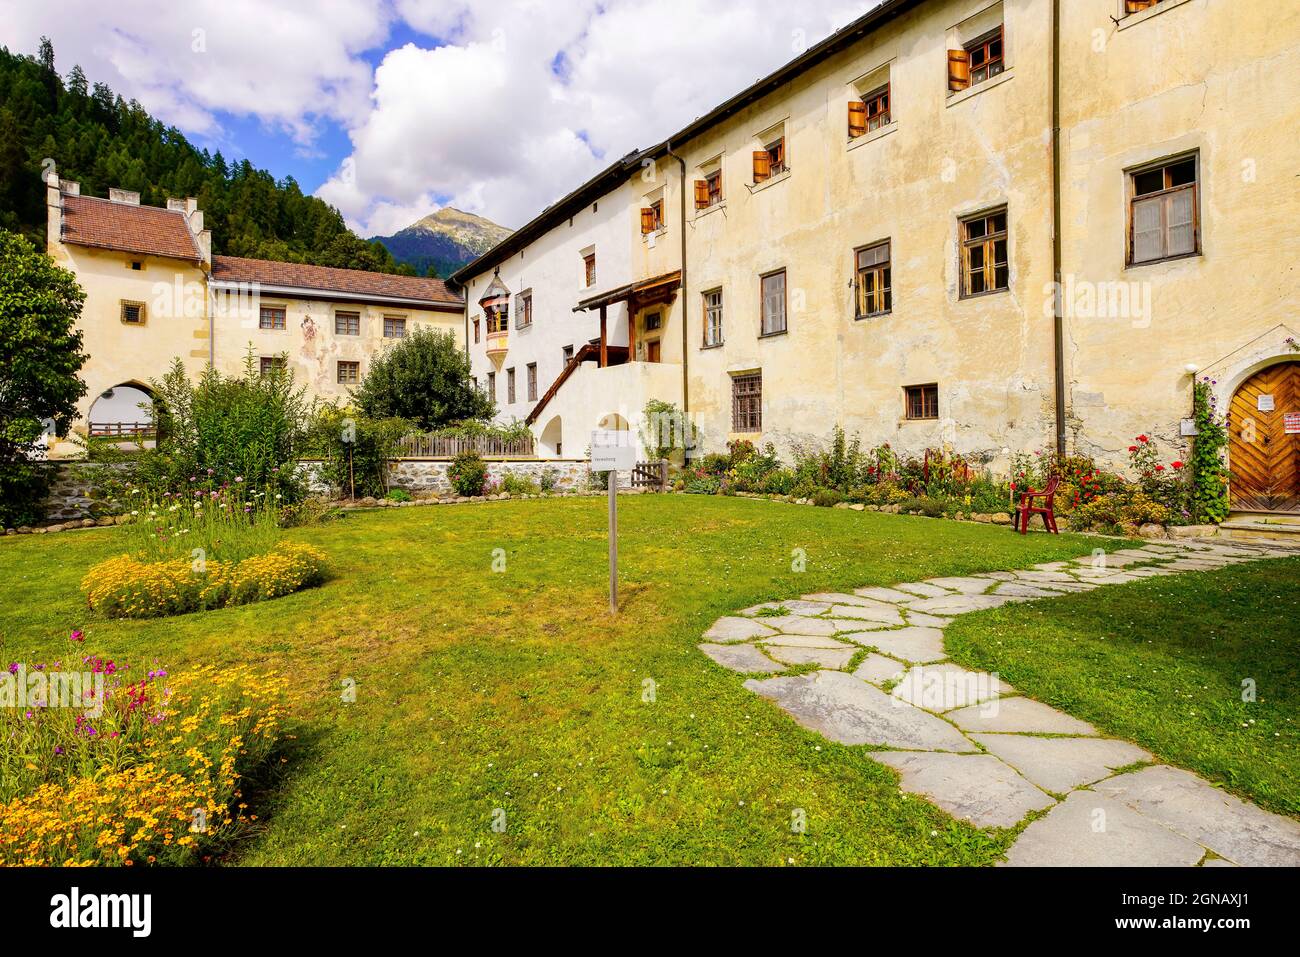 Die Abtei Saint John ist ein altes Benediktinerkloster in der Schweizer Gemeinde Val Müstair im Kanton Graubünden. Stockfoto